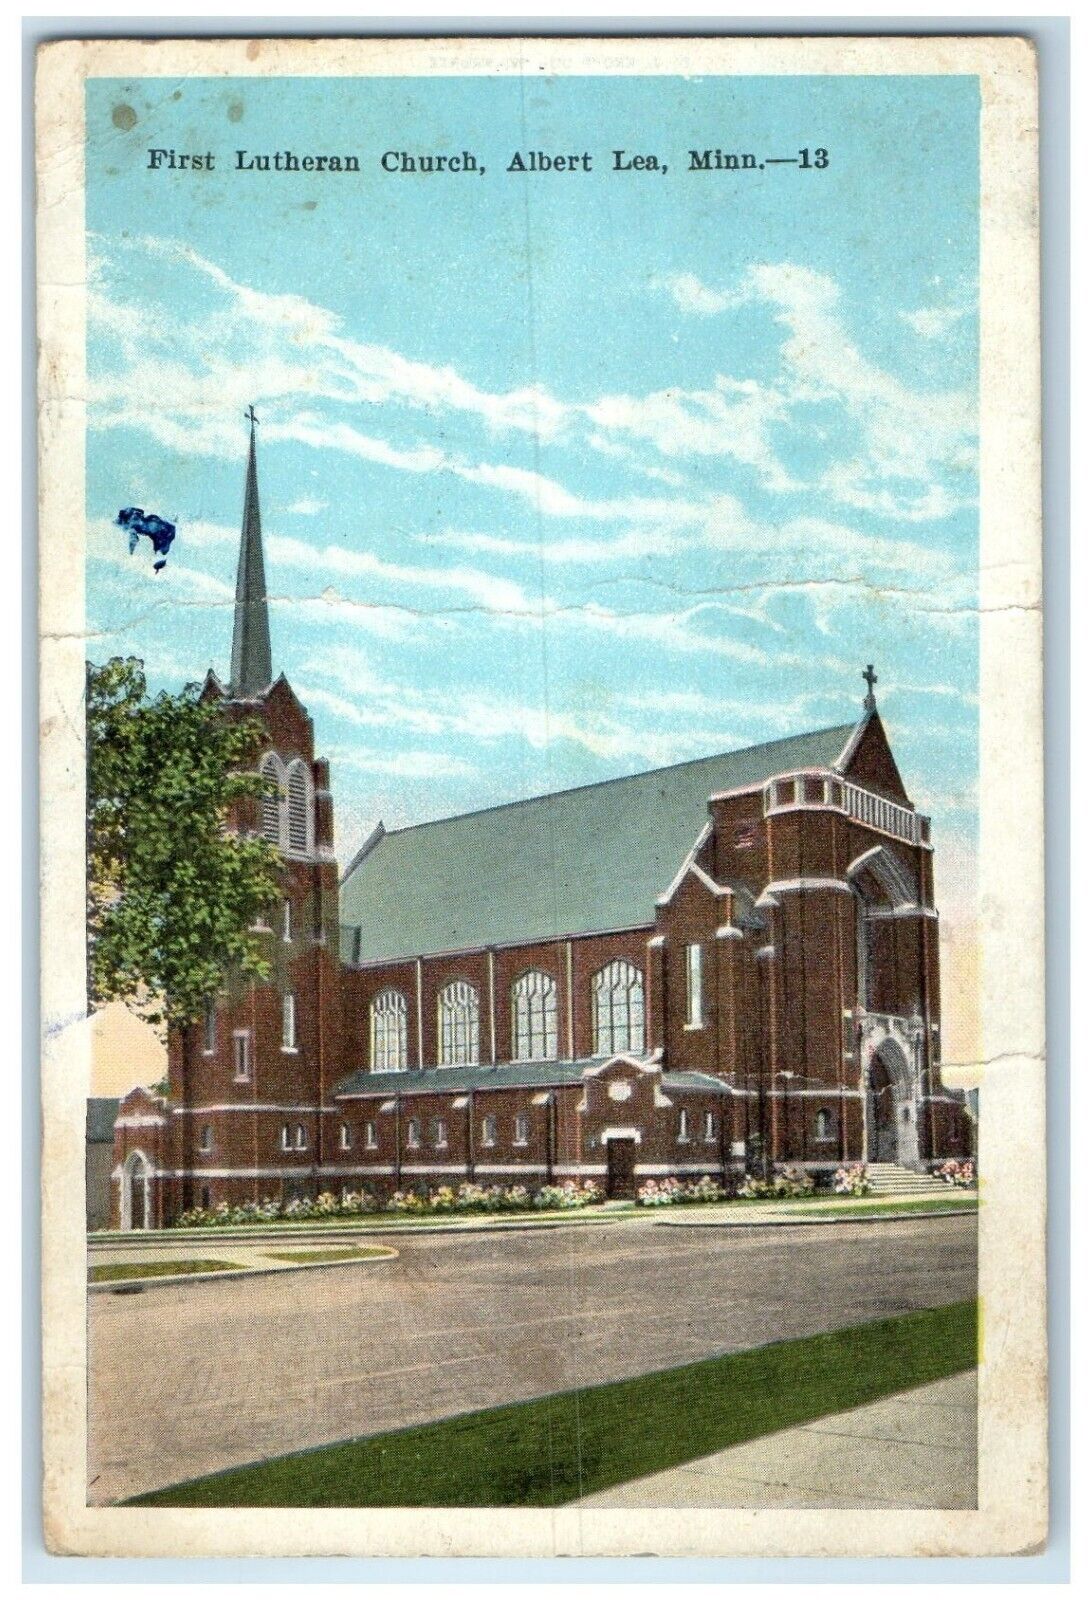 1928 First Lutheran Church Exterior View Building Albert Lea Minnesota Postcard